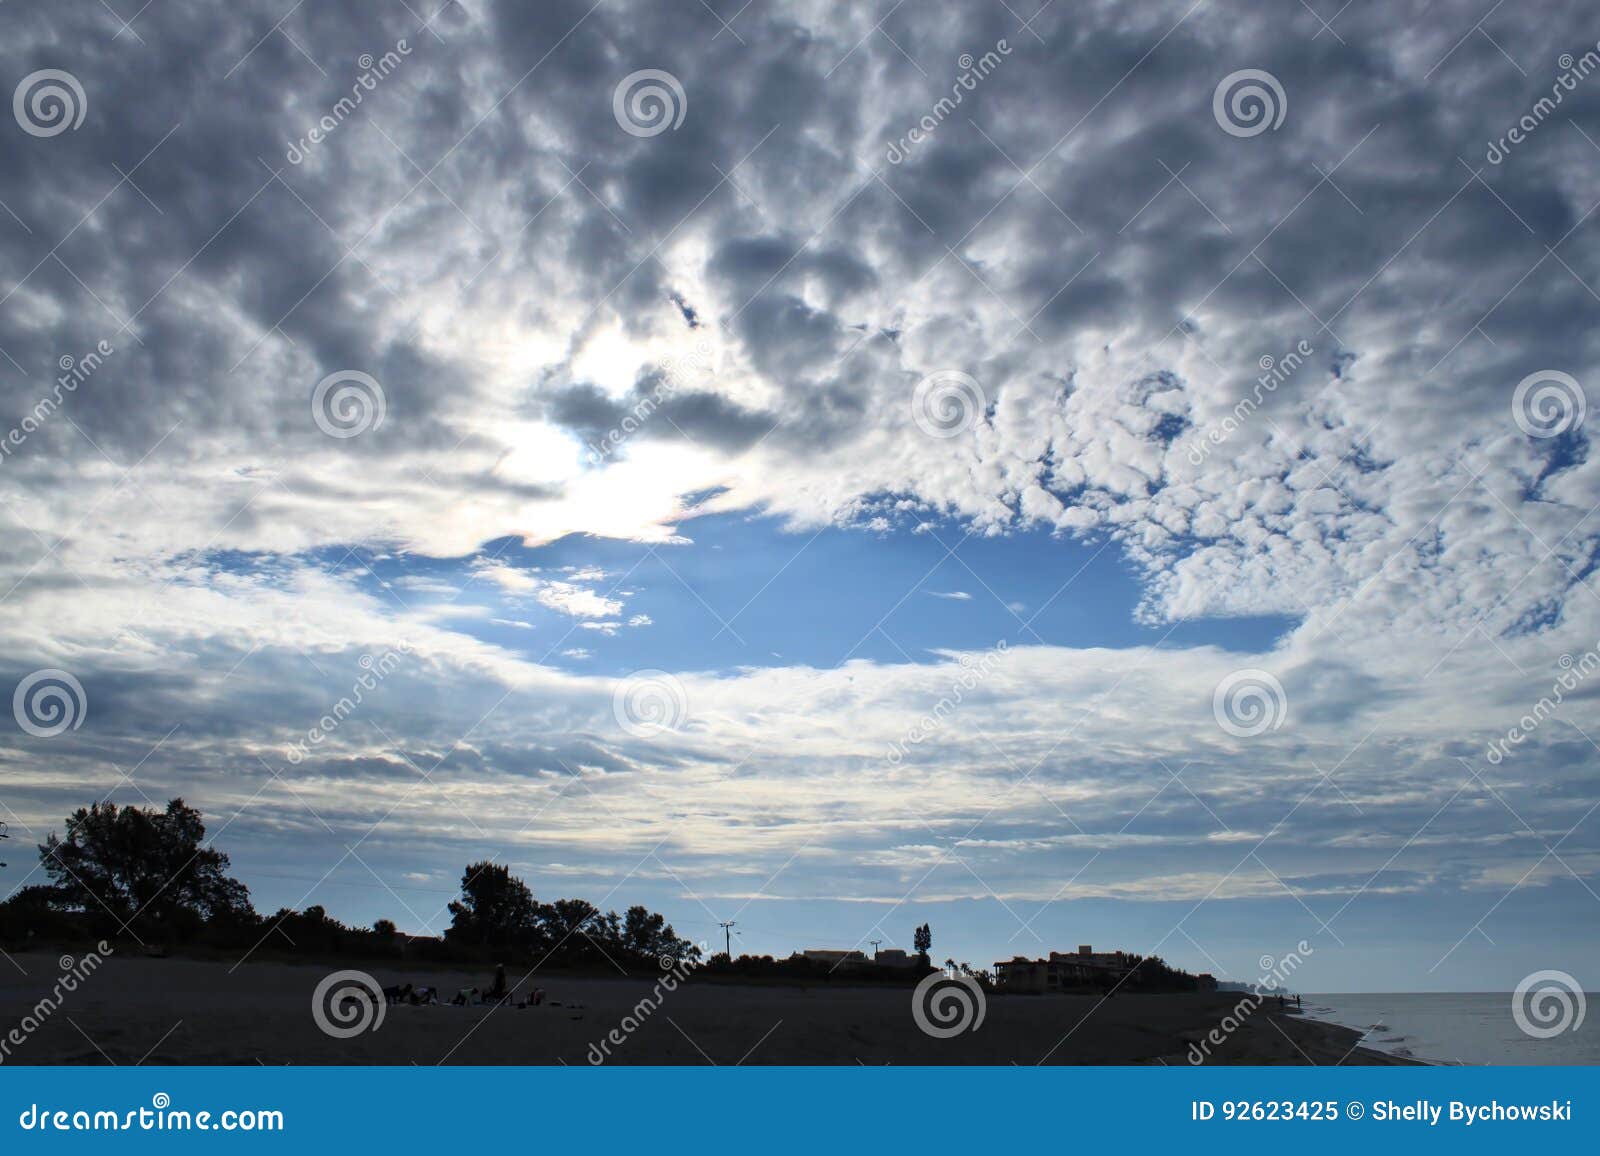 Κόλπος των σύννεφων του Μεξικού μετά από την ανατολή. Ζαλίζοντας ουρανός αμέσως μετά από την ανατολή με τα σύννεφα και το ωκεάνιο νερό στη Φλώριδα από την πλευρά Κόλπων